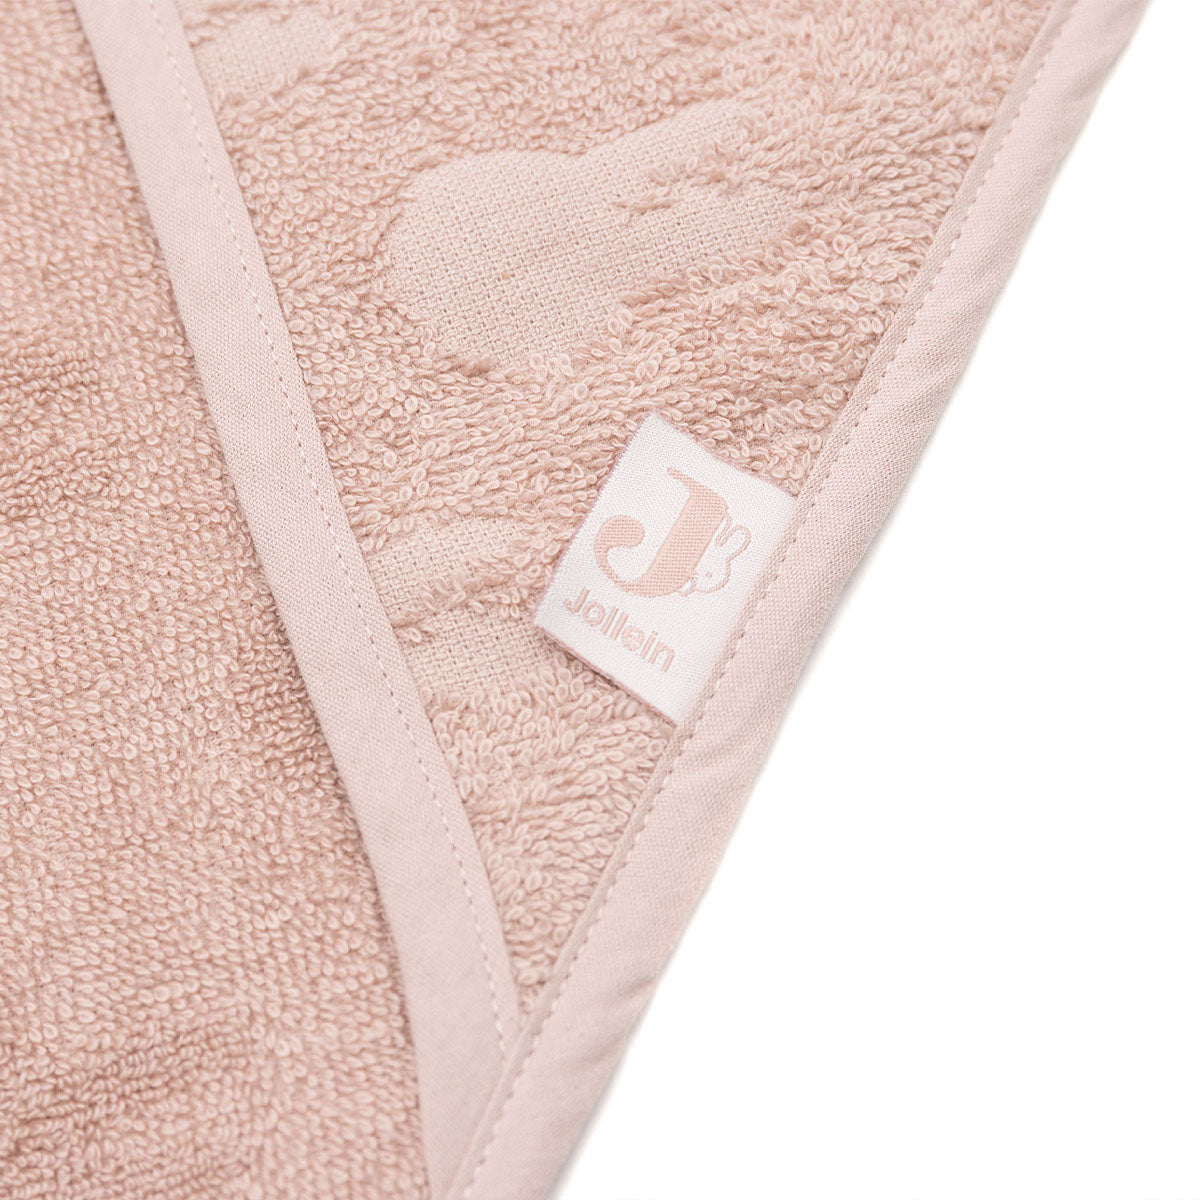 De zachte badcape Miffy jacquard wild rose van Jollein met Nijntje motief is het perfecte handdoekje voor jouw kindje. De handdoek met capuchon is 75x75 cm en is ideaal om je mini af te drogen en warm te houden. VanZus